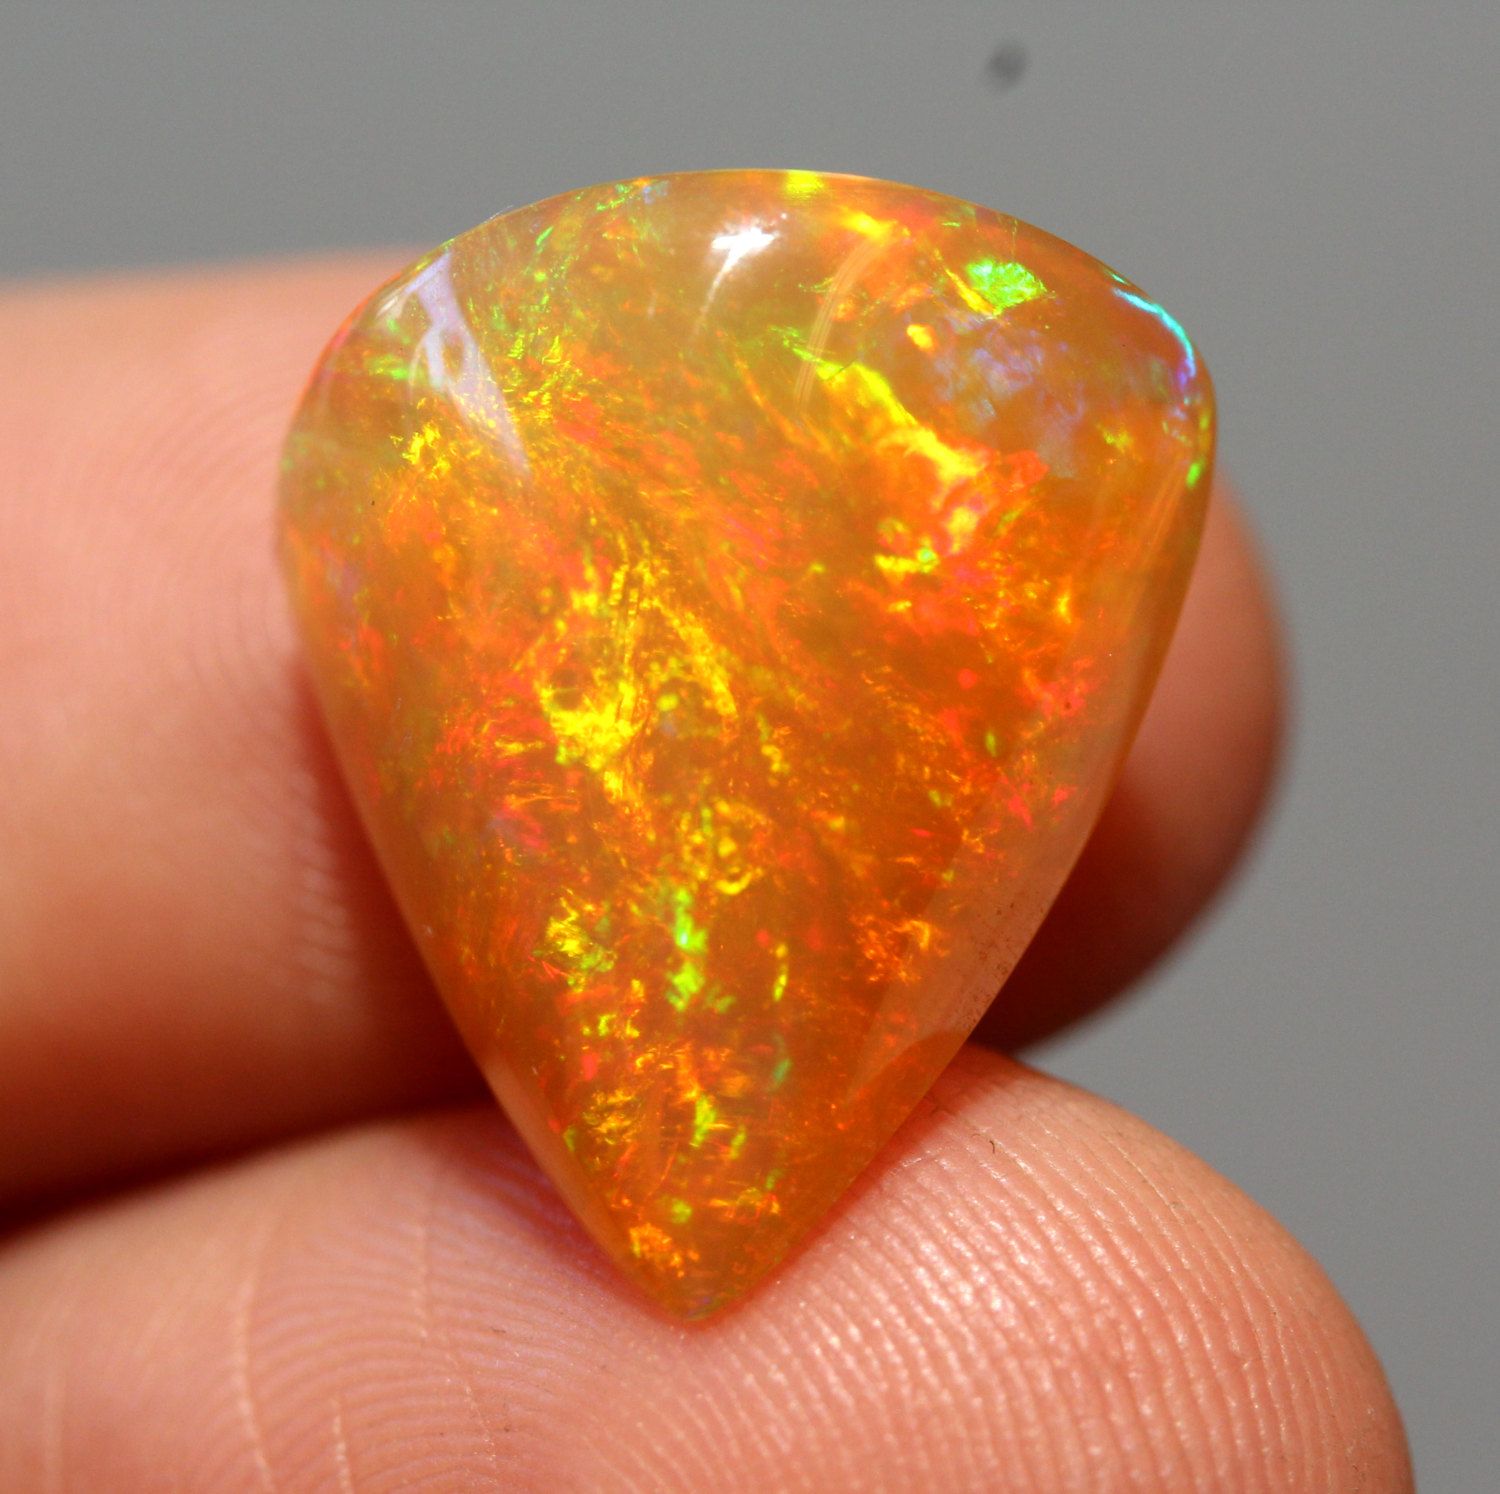  اوپال آتشی (Fire opal) 